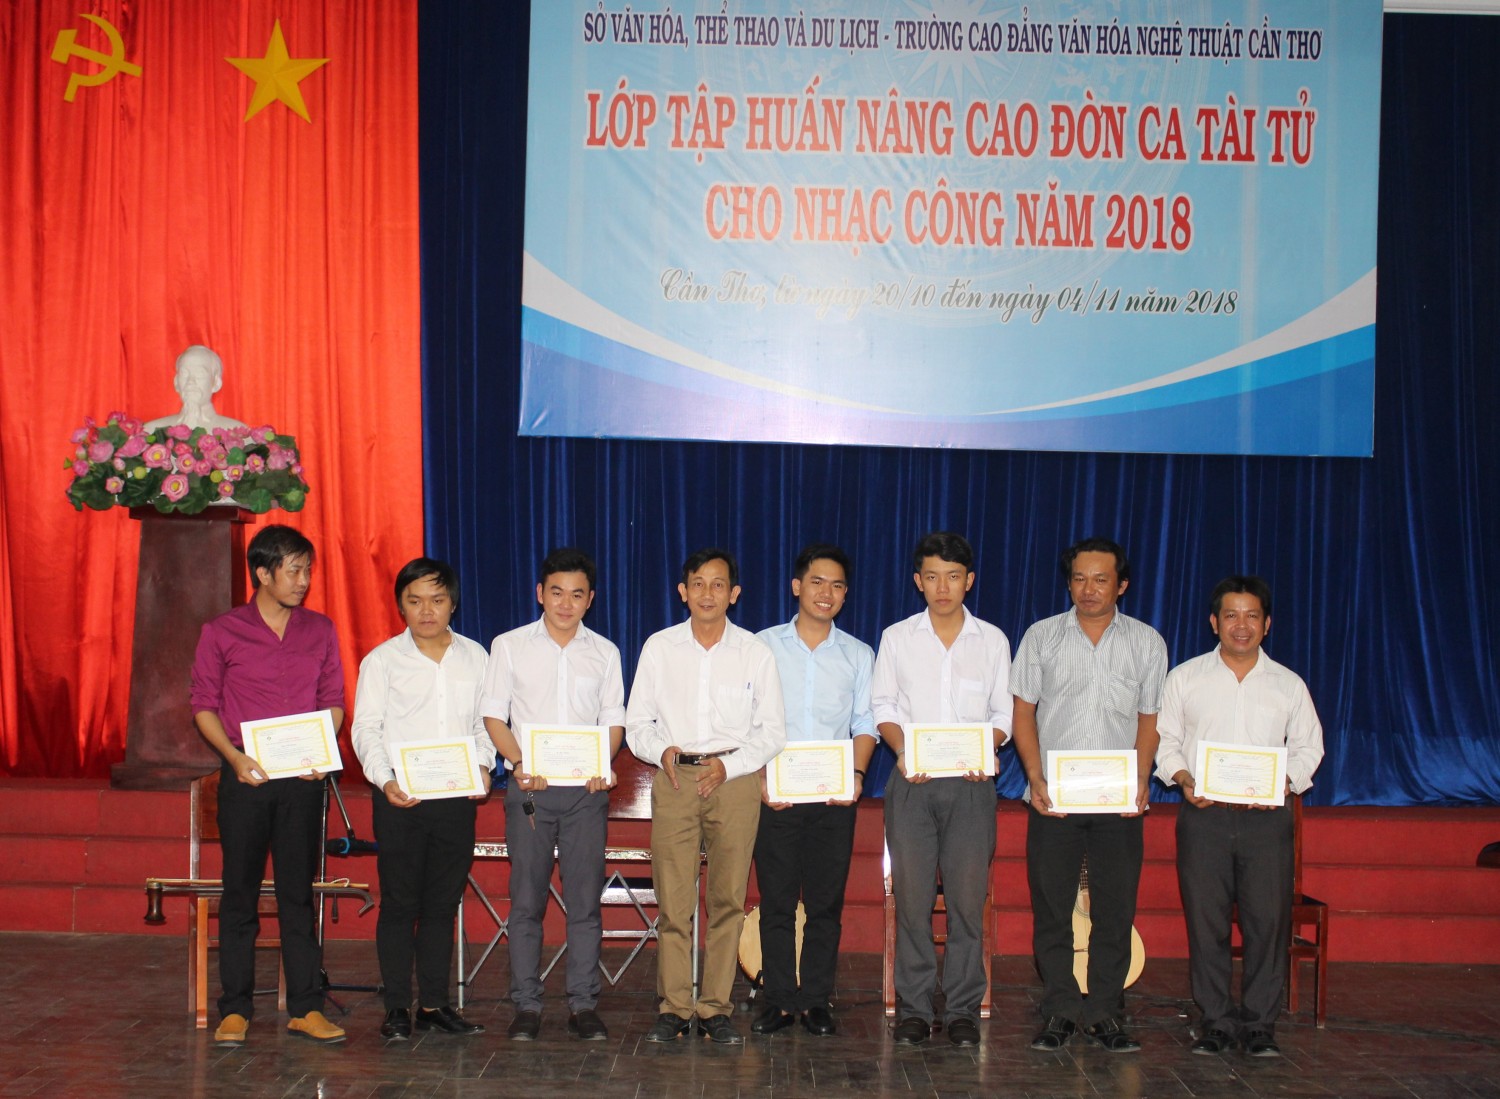 Thầy Trần Văn Nam - Bí thư Chi bộ, Phó Hiệu trưởng nhà trường trao giấy chứng nhận hoàn thành khóa học cho các học viên